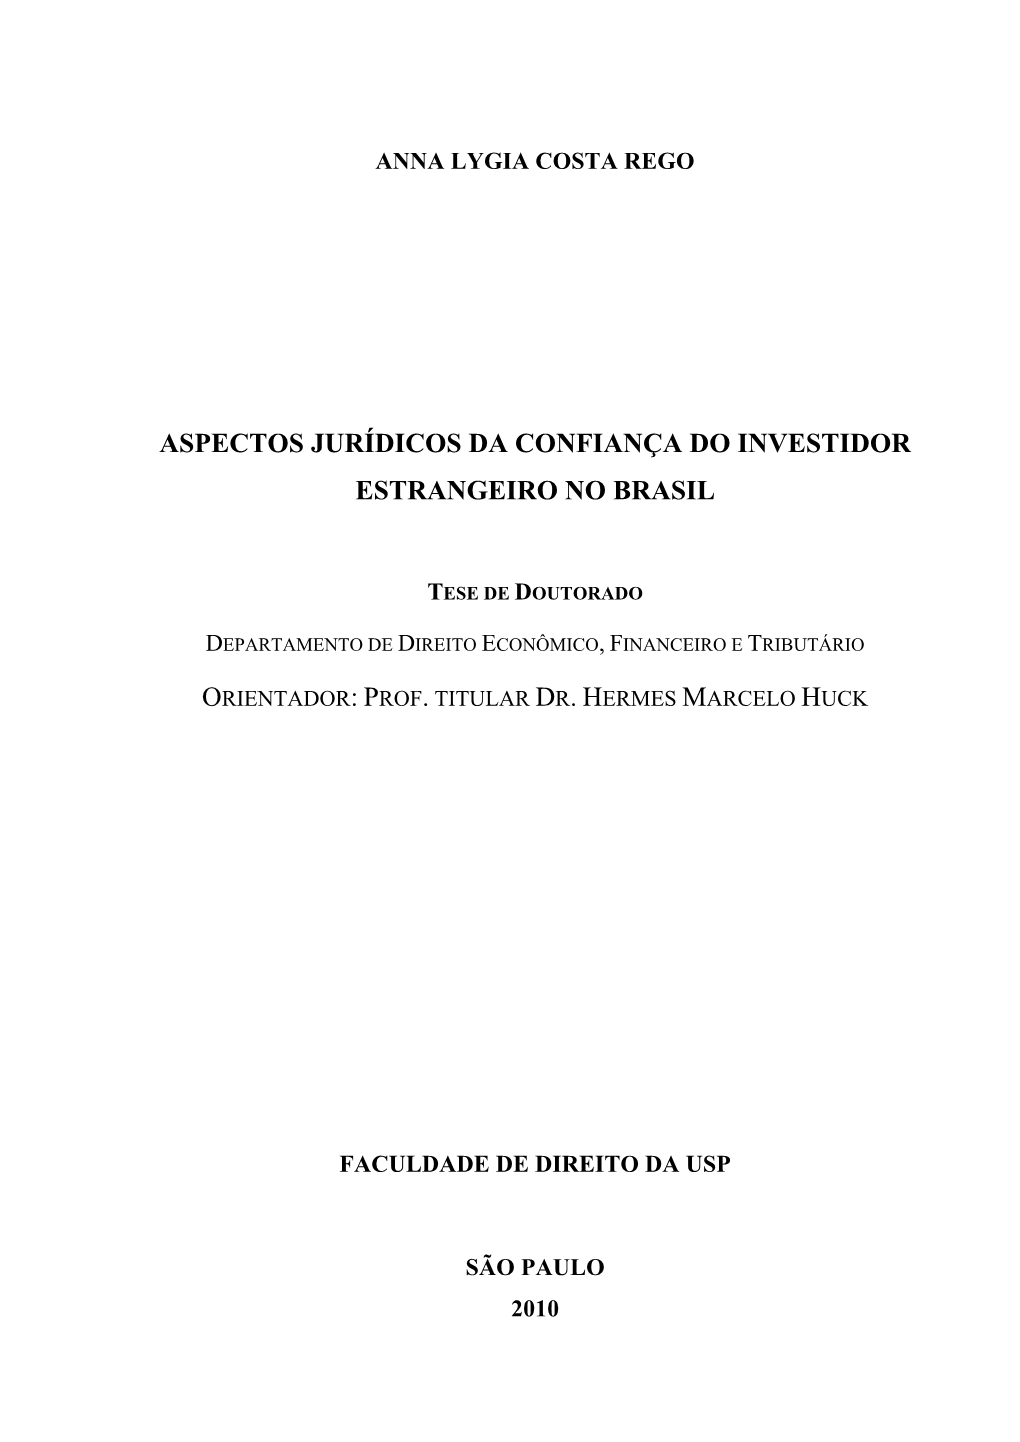 Aspectos Jurídicos Da Confiança Do Investidor Estrangeiro No Brasil